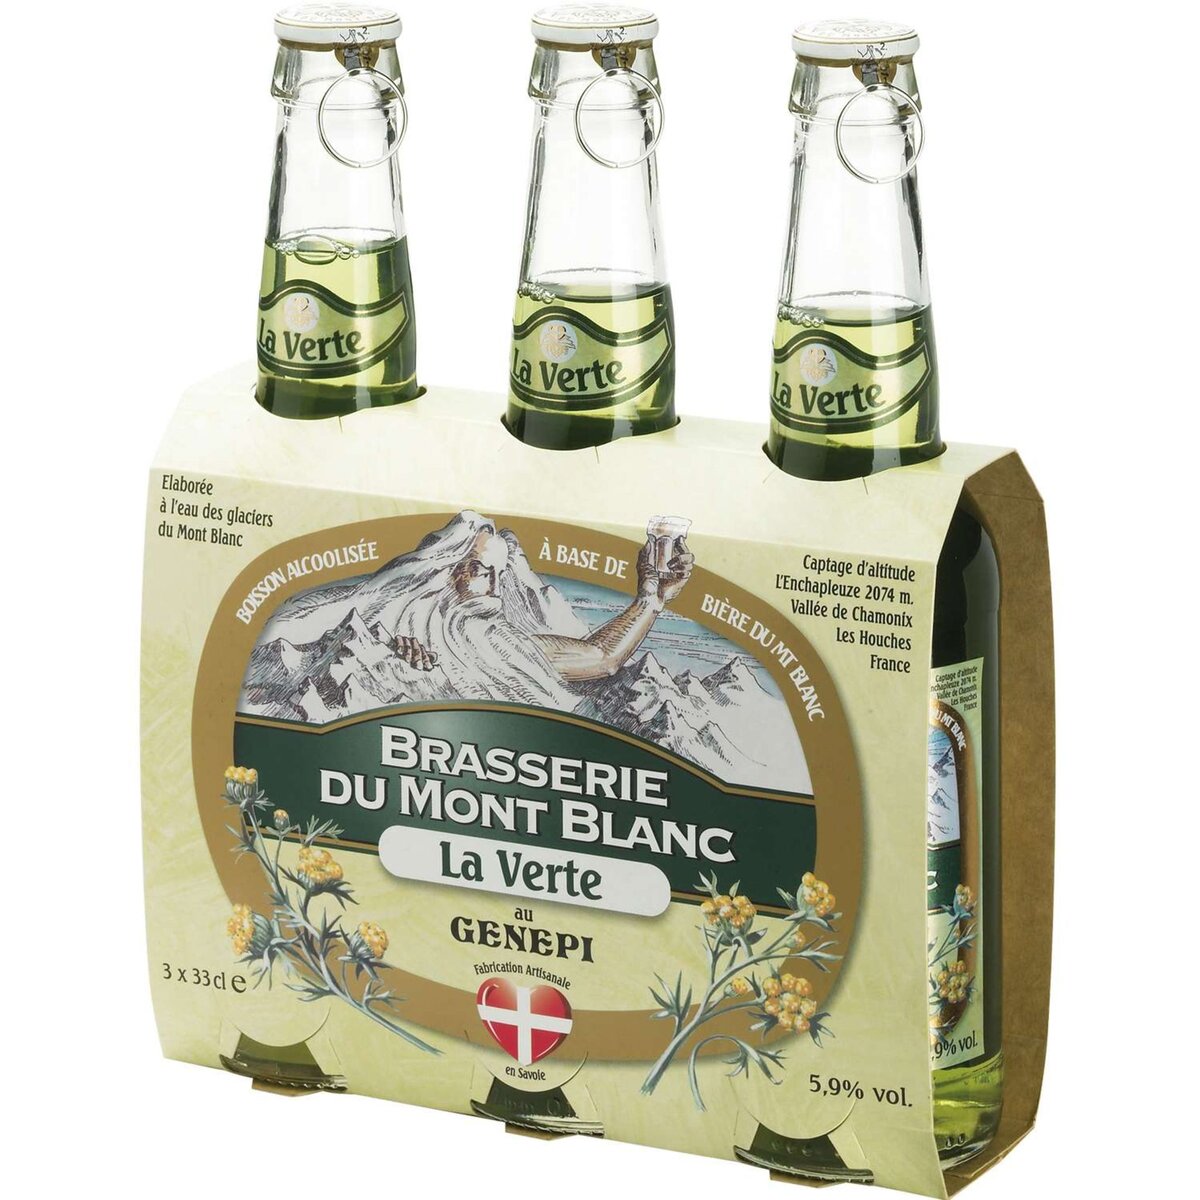 BRASSERIE MONT BLANC Brasserie du mont blanc Bière verte au genepi 5,9% bouteilles 3x33cl 3x33cl